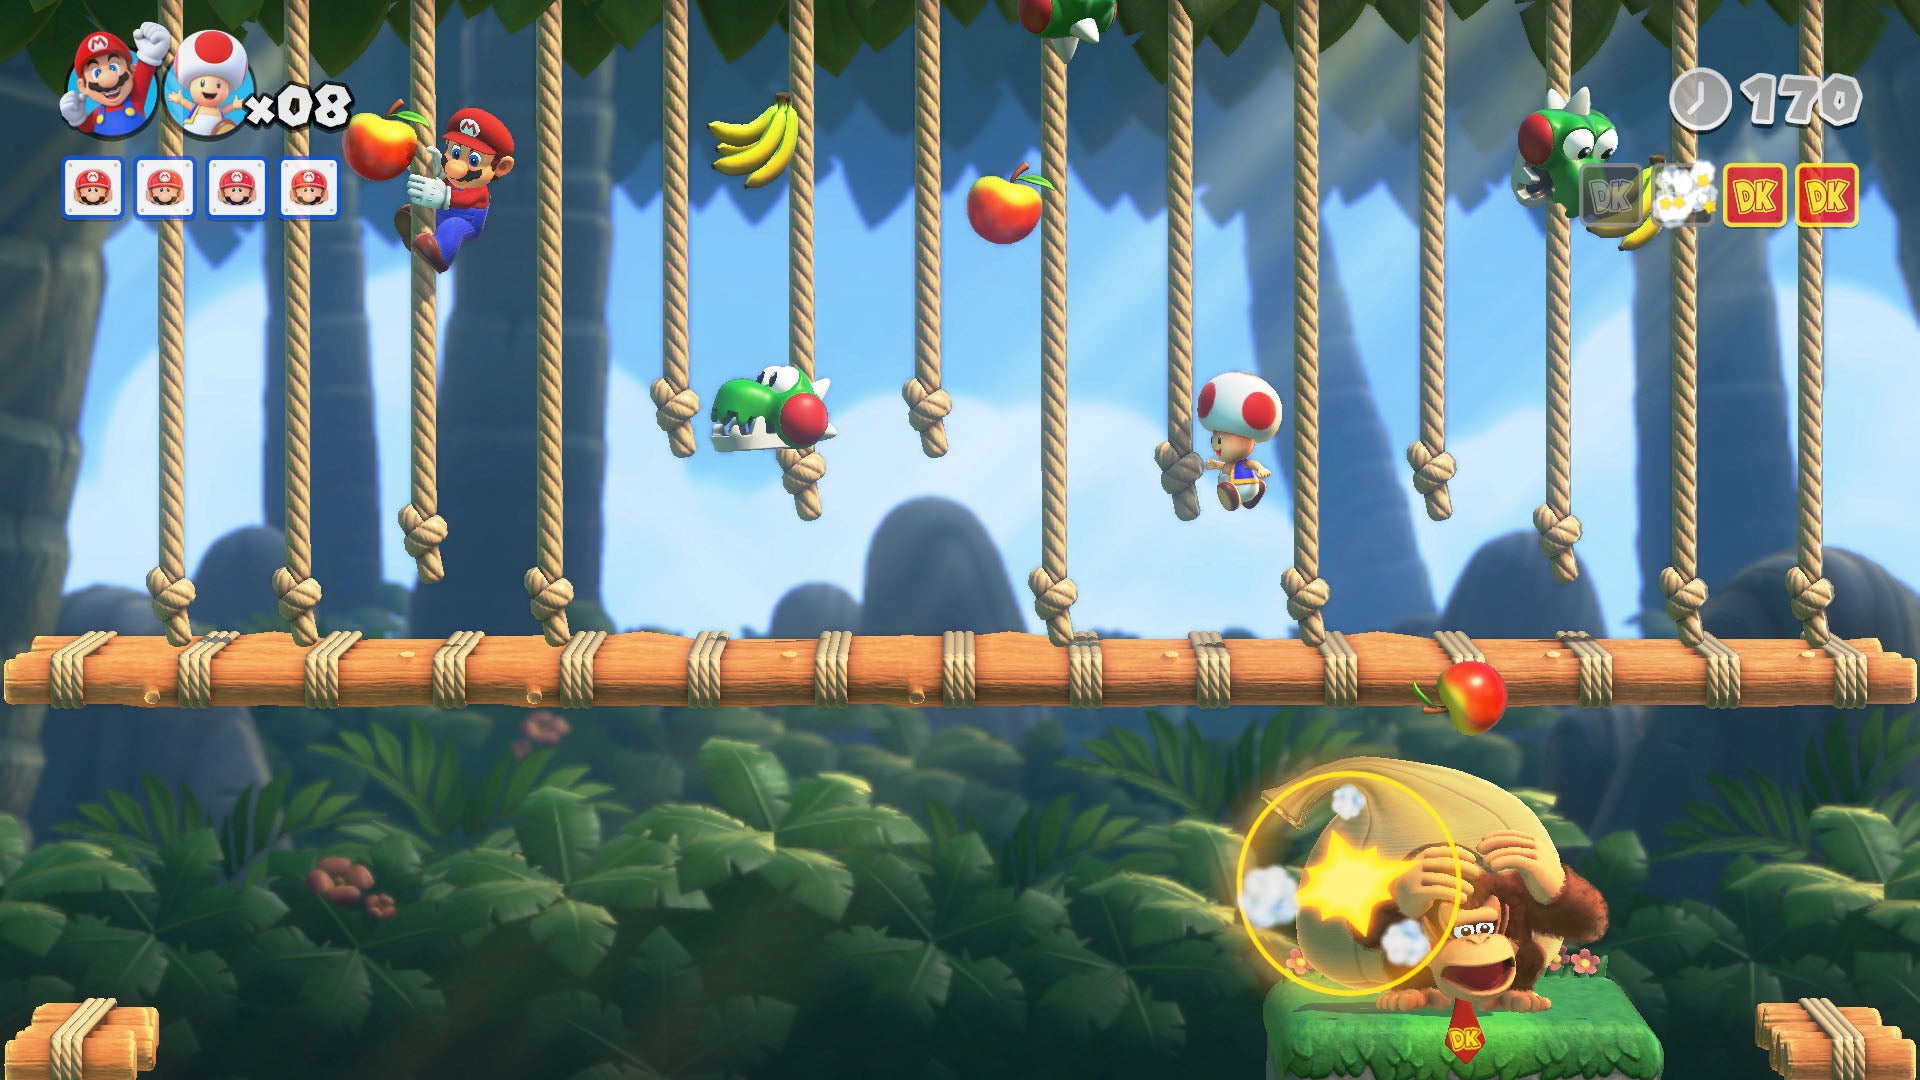 Le jeu Mario vs. Donkey Kong en vue de côté. Ici, Mario grimpe sur une série de cordes dans un niveau de jungle, tandis que Donkey Kong se cache en dessous, pour une raison quelconque. Peut-être que Mario jette des choses, ce qui n'est pas très gentil de sa part